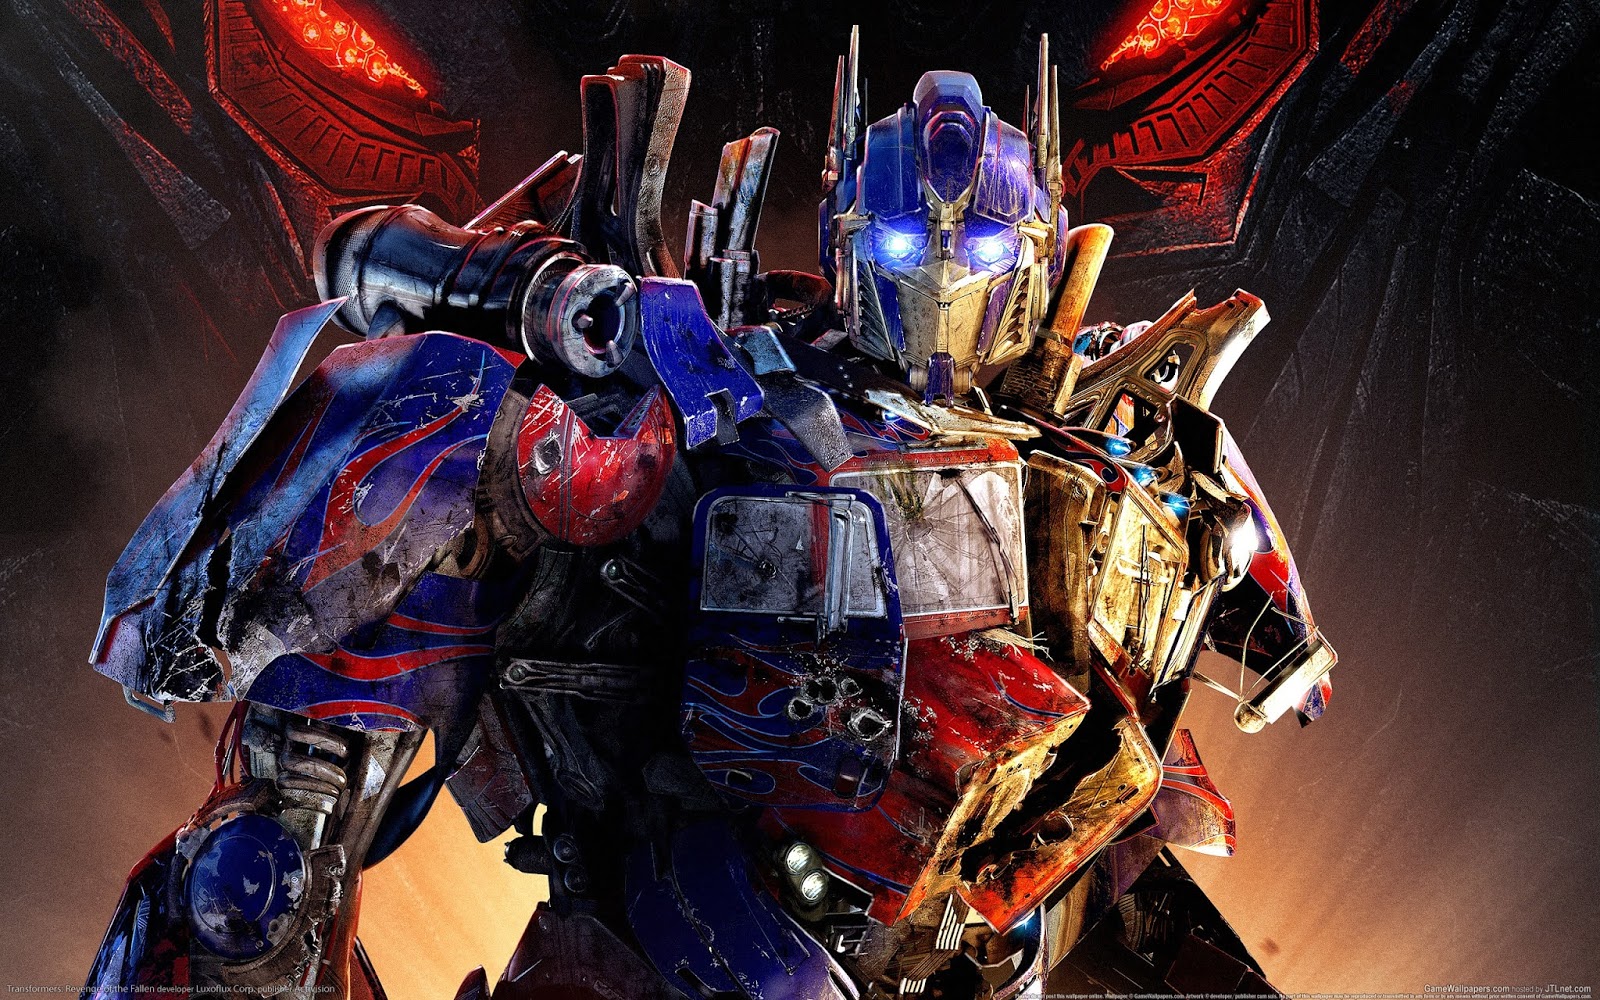 Transformers:Despertar das Feras, filme ganha teaser focado em